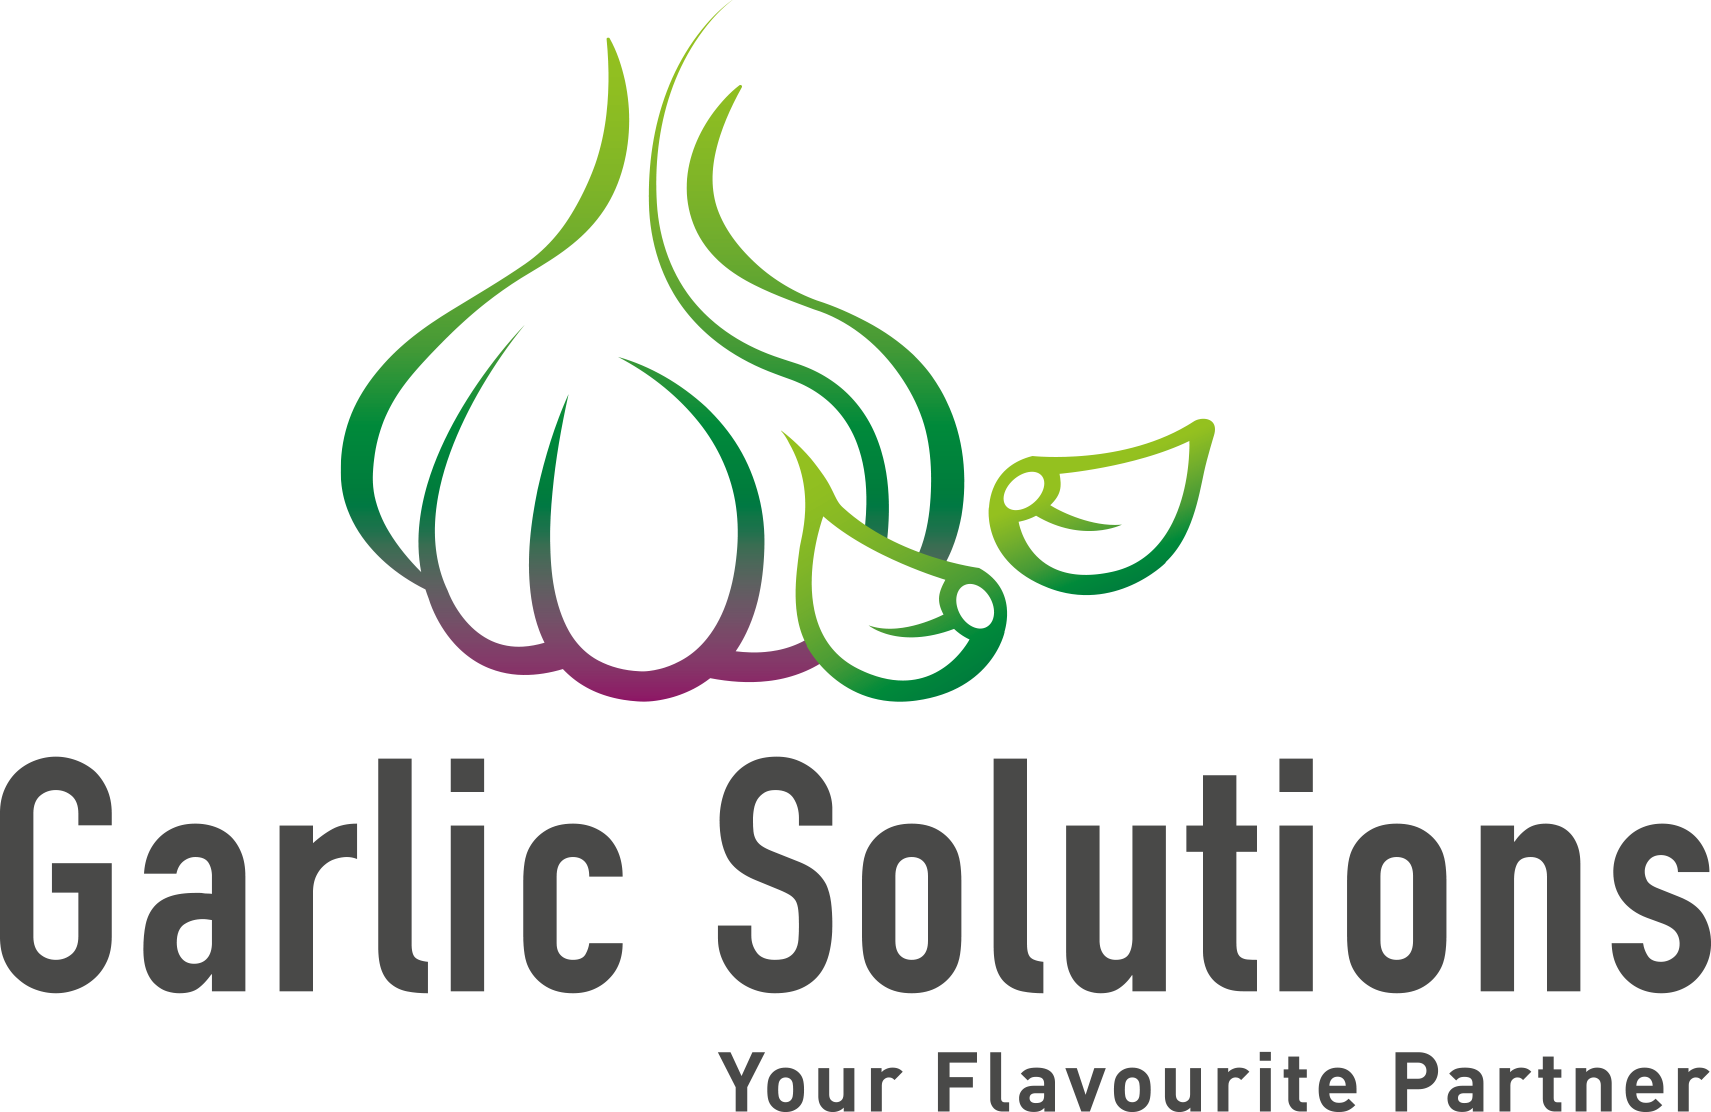 Garlic Solutions